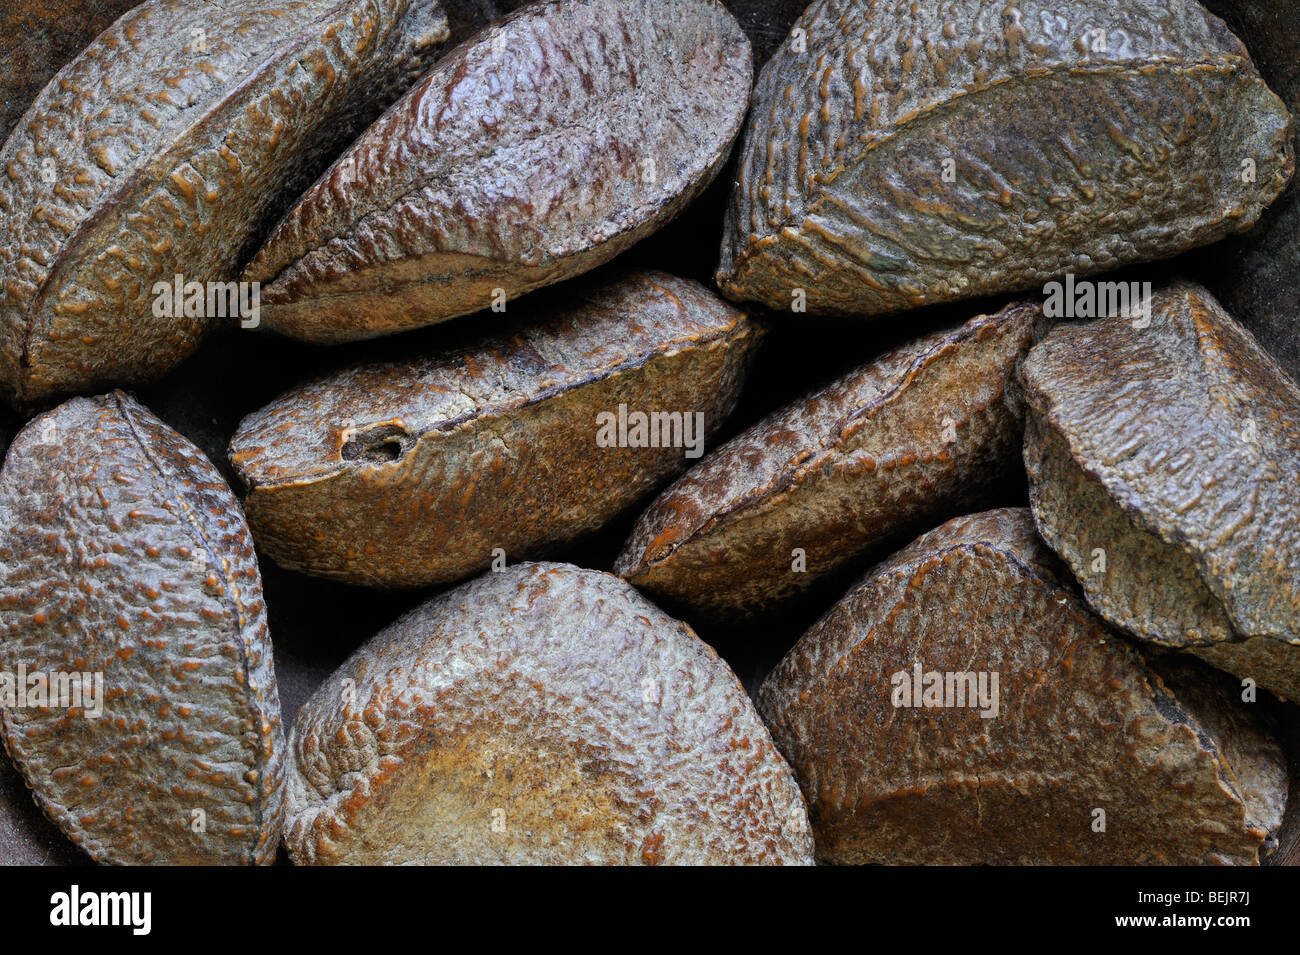 Les noix du Brésil (Bertholletia excelsa), originaire d'Amérique du Sud Banque D'Images